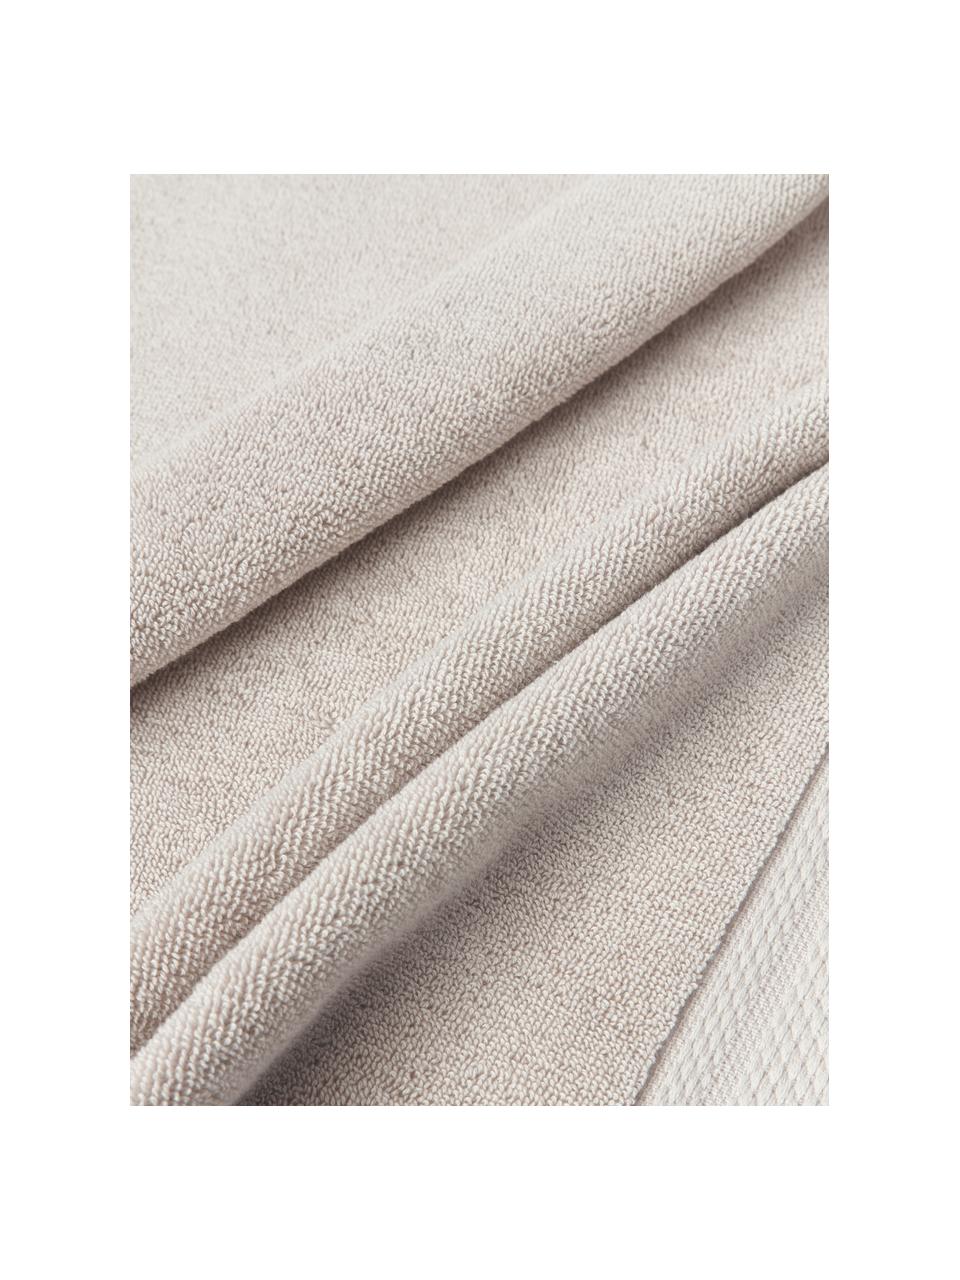 Handtuch Premium aus Bio-Baumwolle, in verschiedenen Größen, 100 % Bio-Baumwolle, GOTS-zertifiziert (von GCL International, GCL-300517)
 Schwere Qualität, 600 g/m², Hellbeige, Handtuch, B 50 x L 100 cm